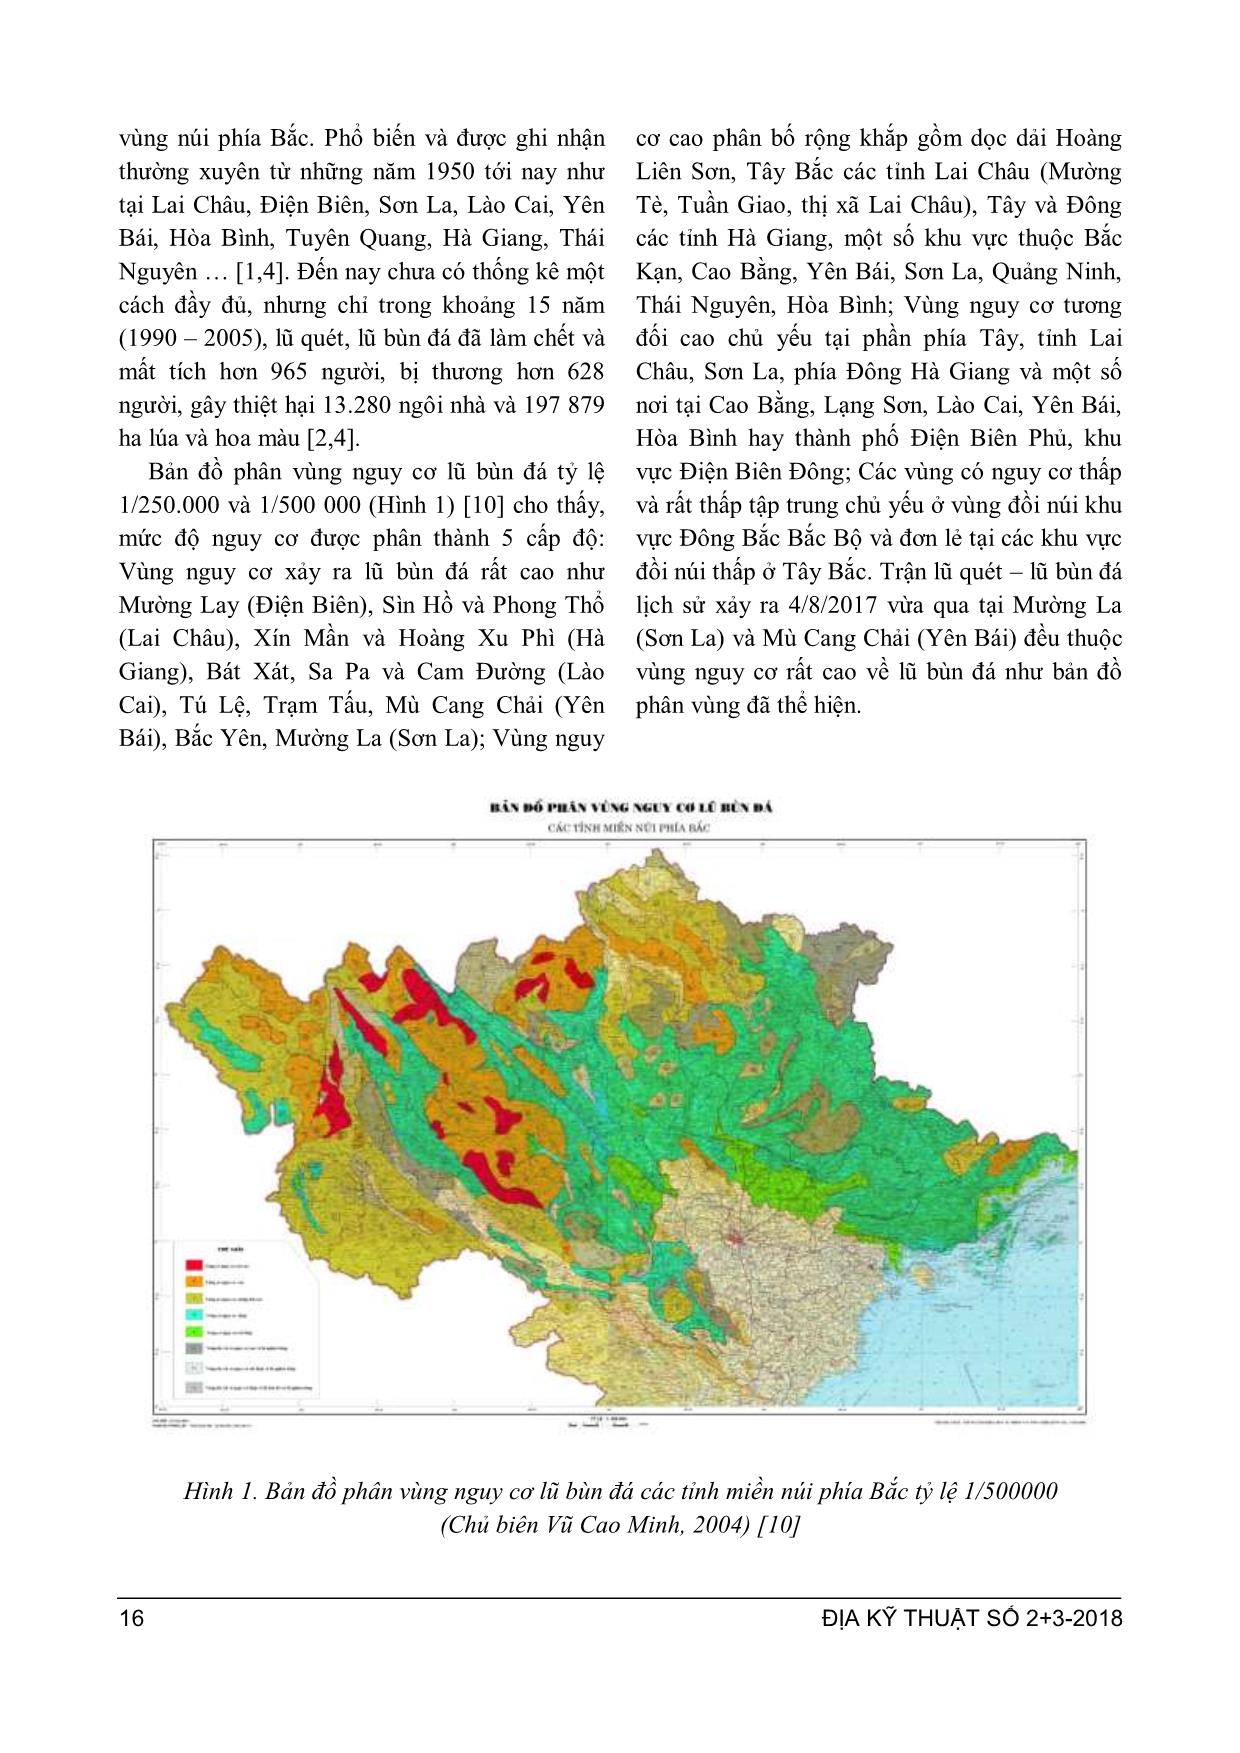 Đặc điểm lũ bùn đá và giải pháp cấu trúc linh hoạt giảm nhẹ tai biến do lũ bùn đá ở vùng núi phía Bắc Việt Nam trang 2